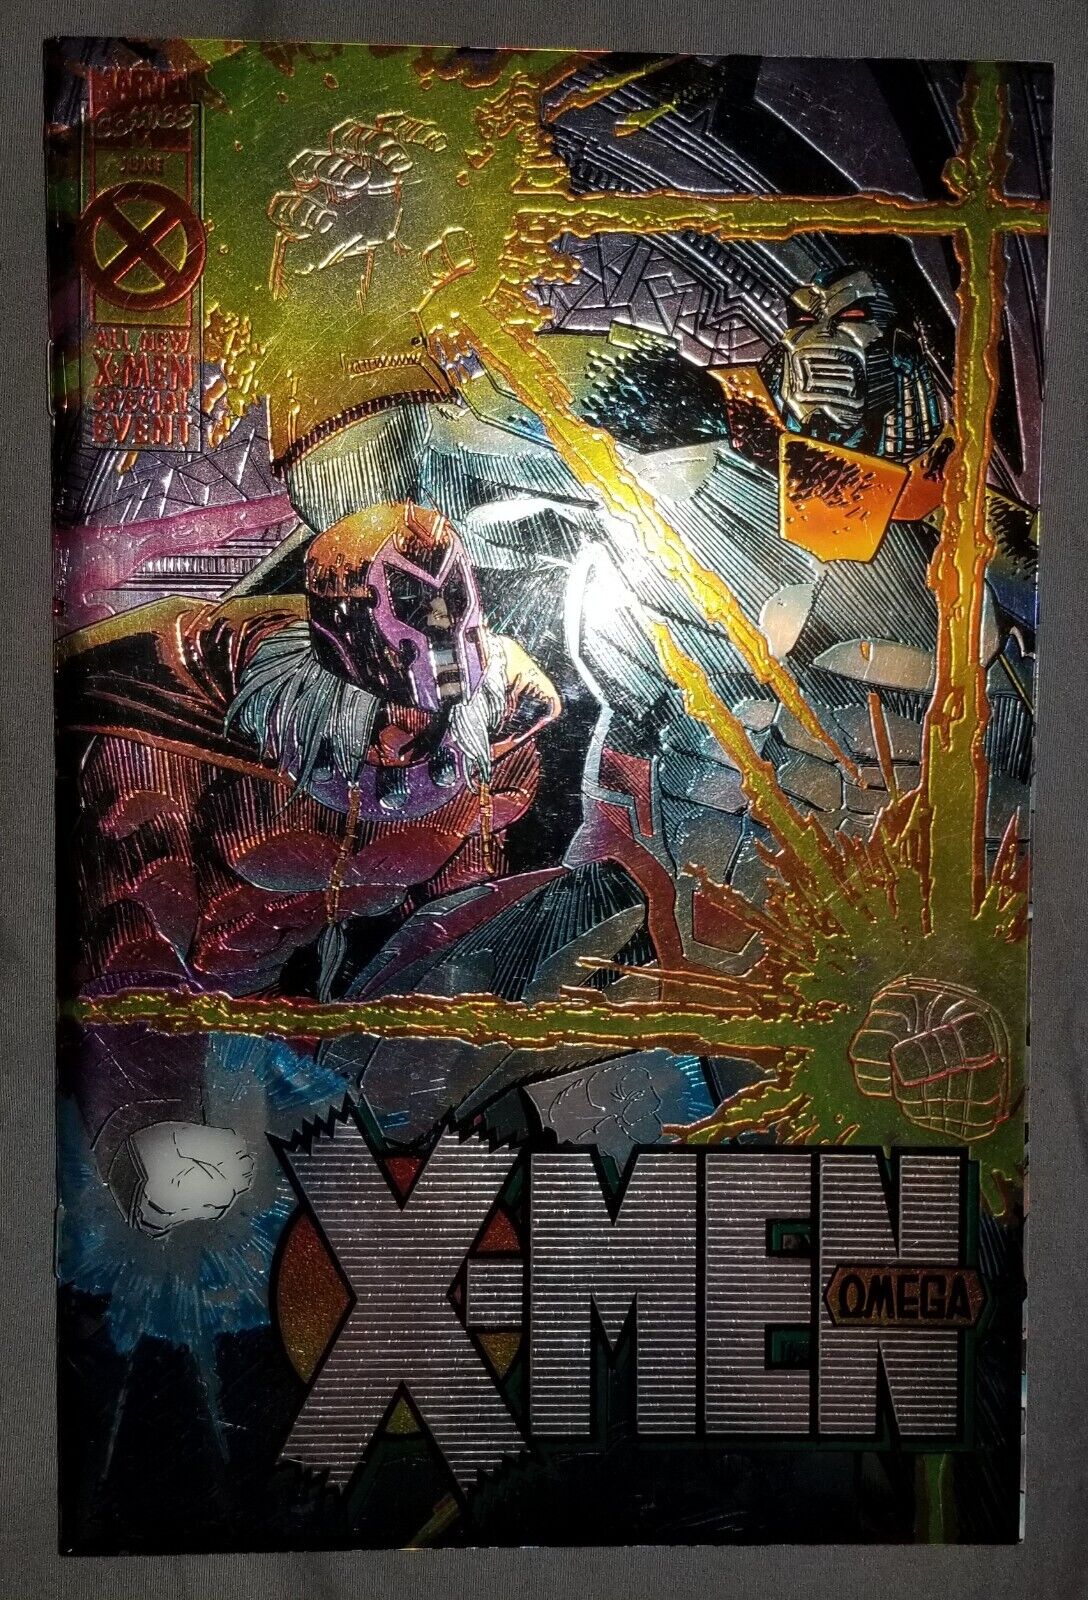 X-MEN Omega, (Age of Apolcalypse)